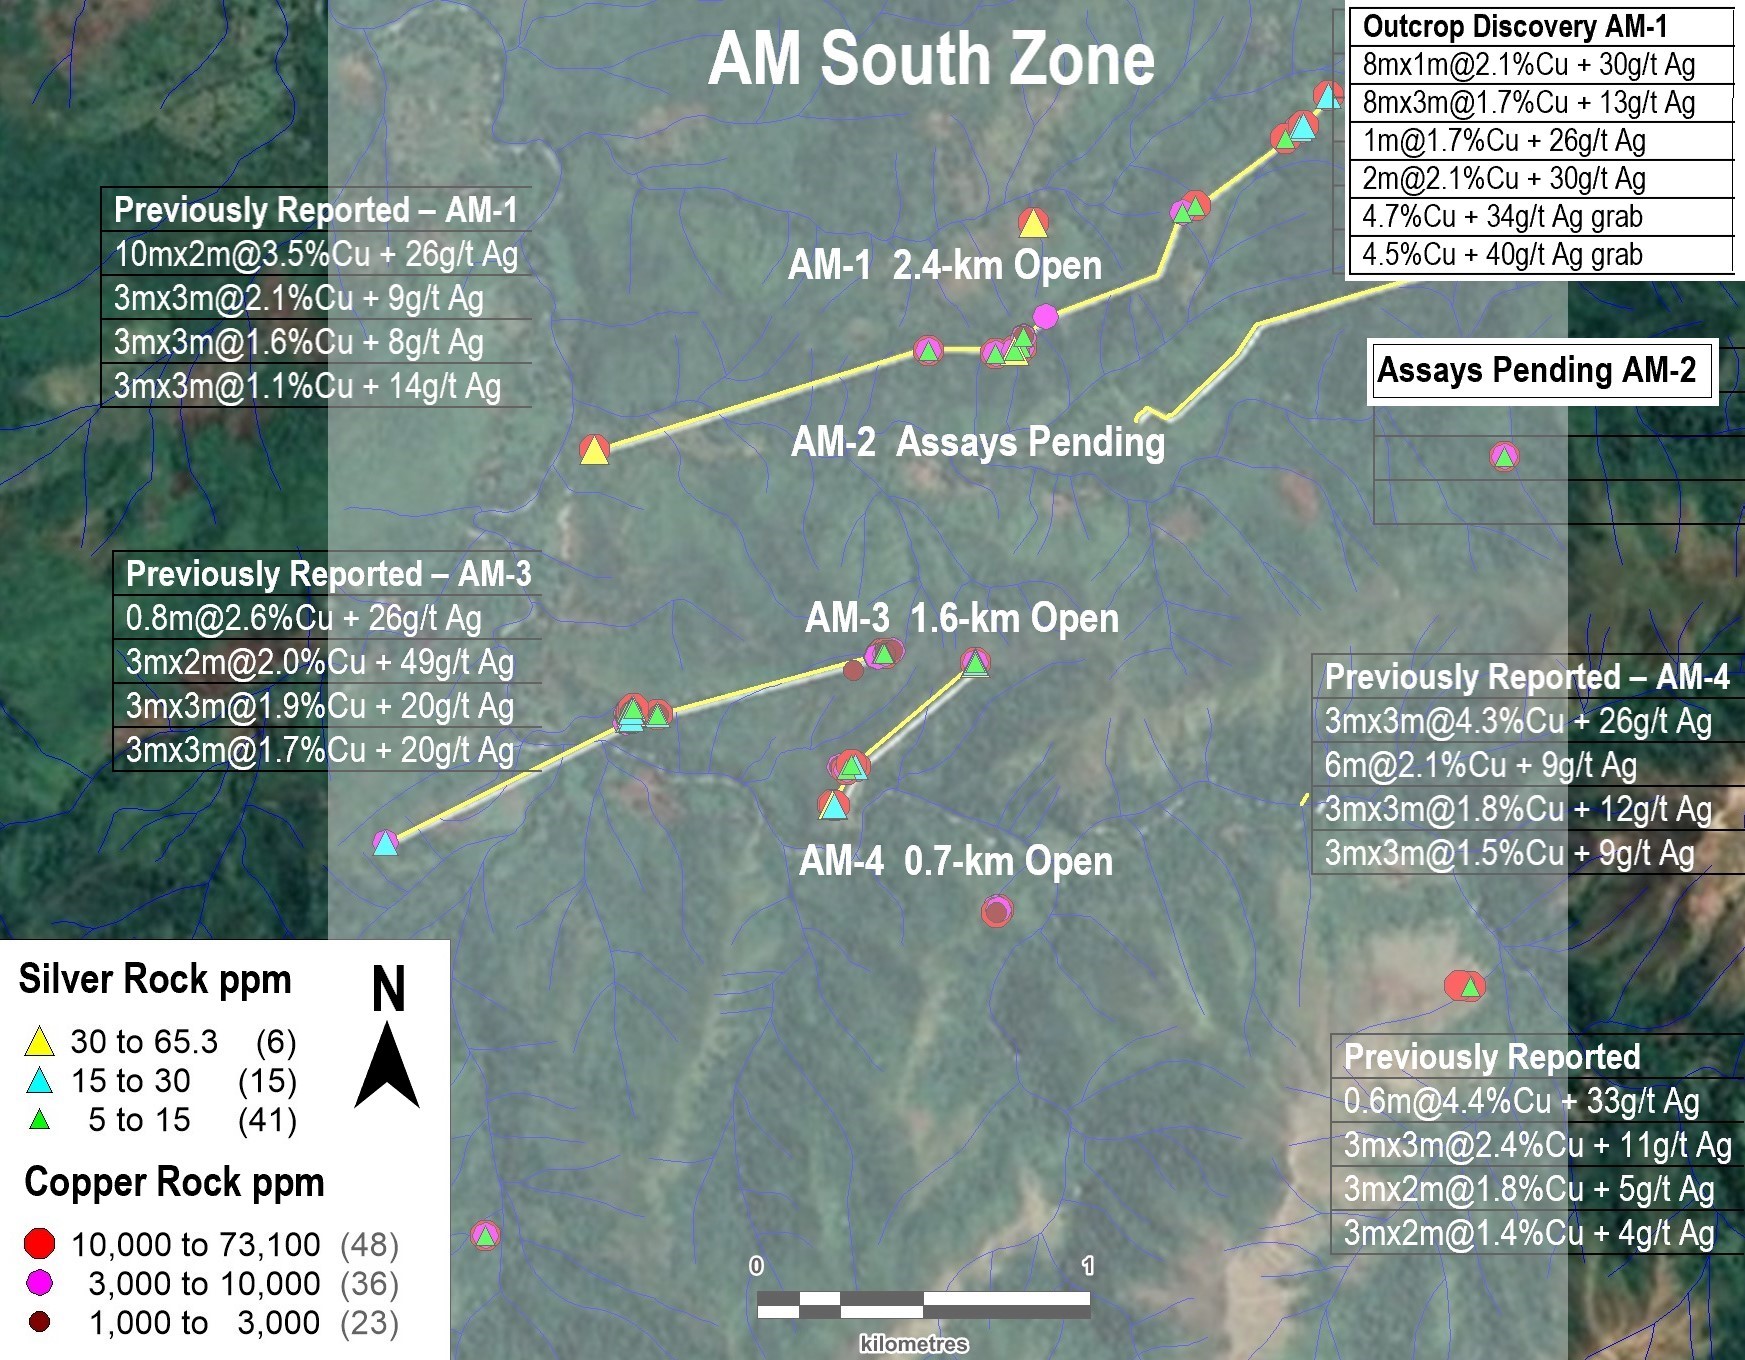 Figure 2. AM South Zone (4-km by 3-km Open)